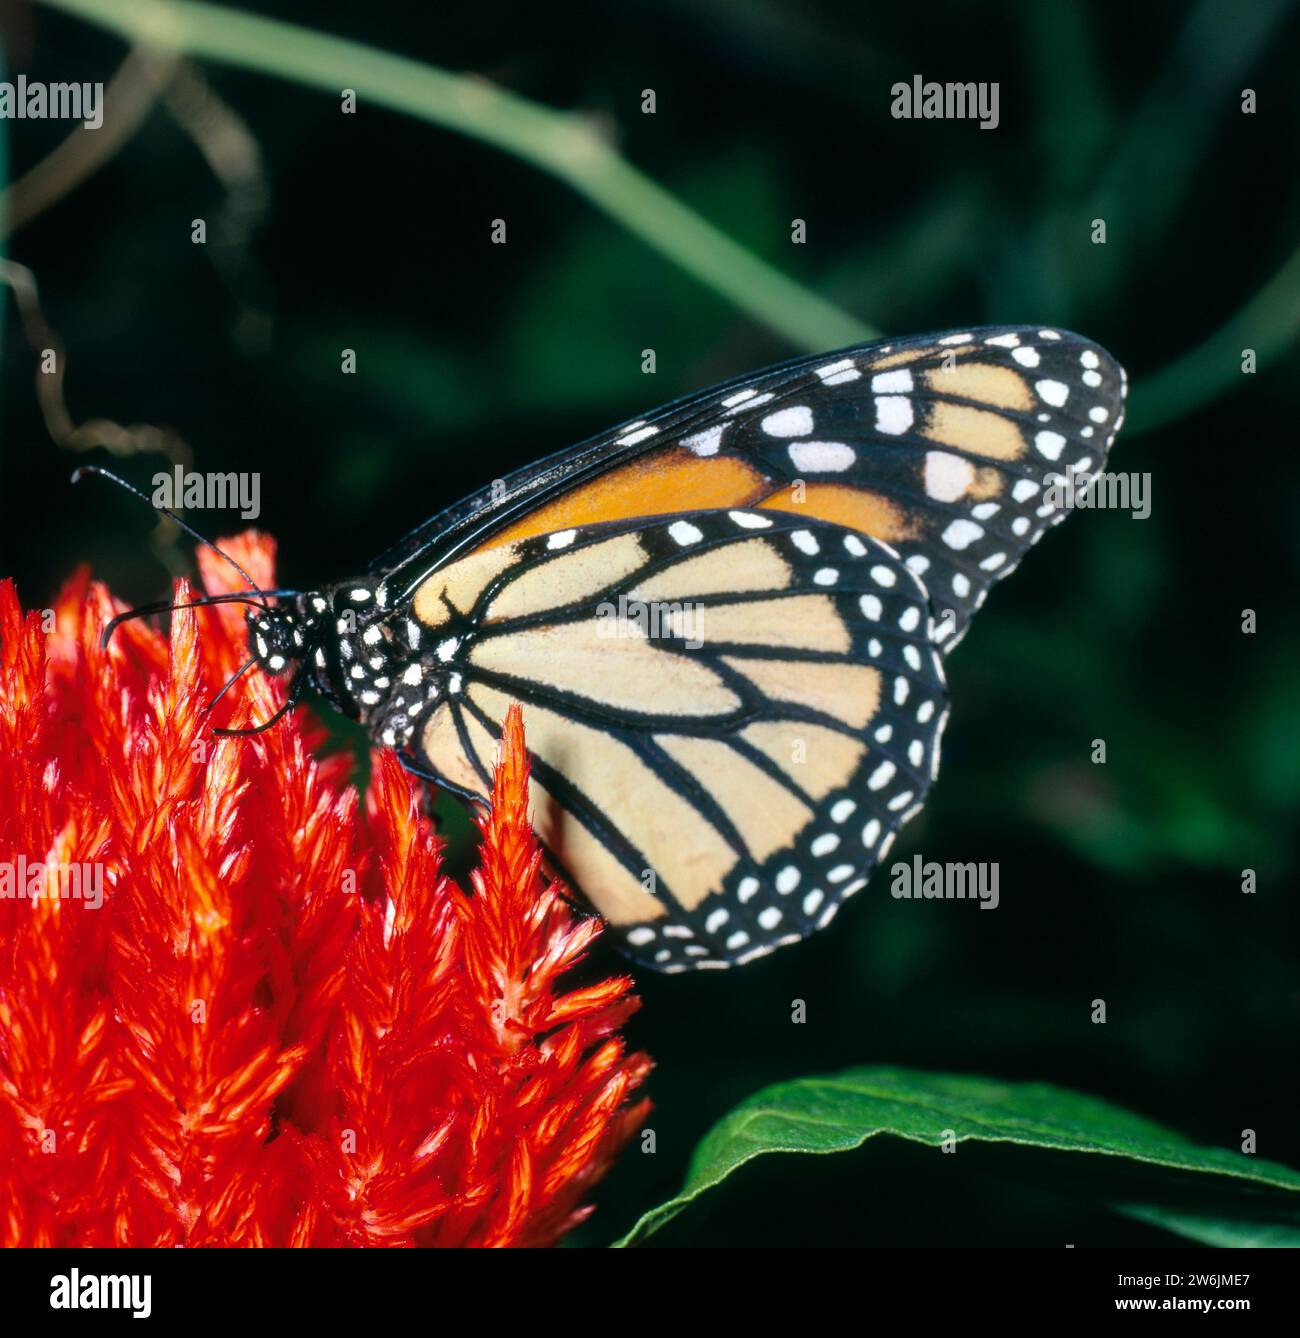 Monarchfalter saugt auf roter Bluete von Celosie oder Hahnenkamm Monarchfalter *** Monarchfalter ernährt sich von roten Blüten von Celosie oder Hahnenkamm Monarchfalter Stockfoto